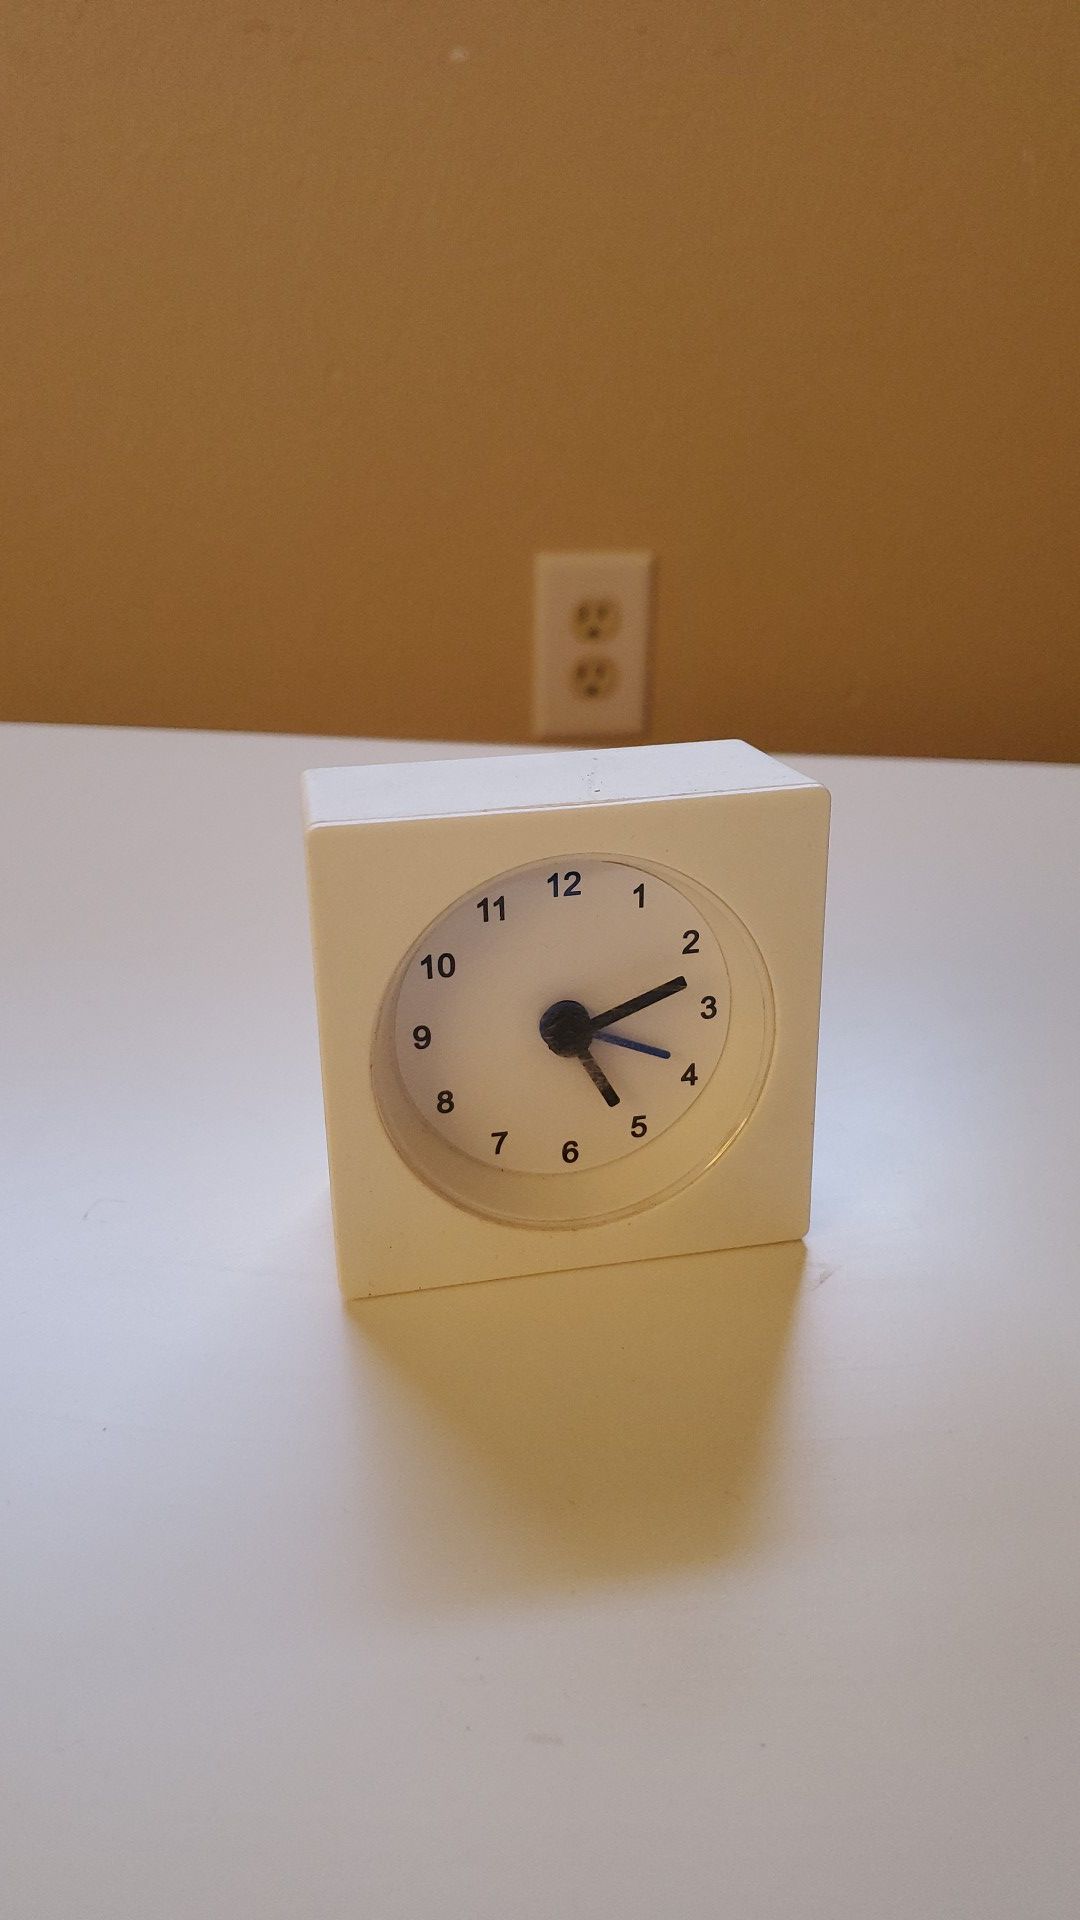 Ikea desk clock with alarm